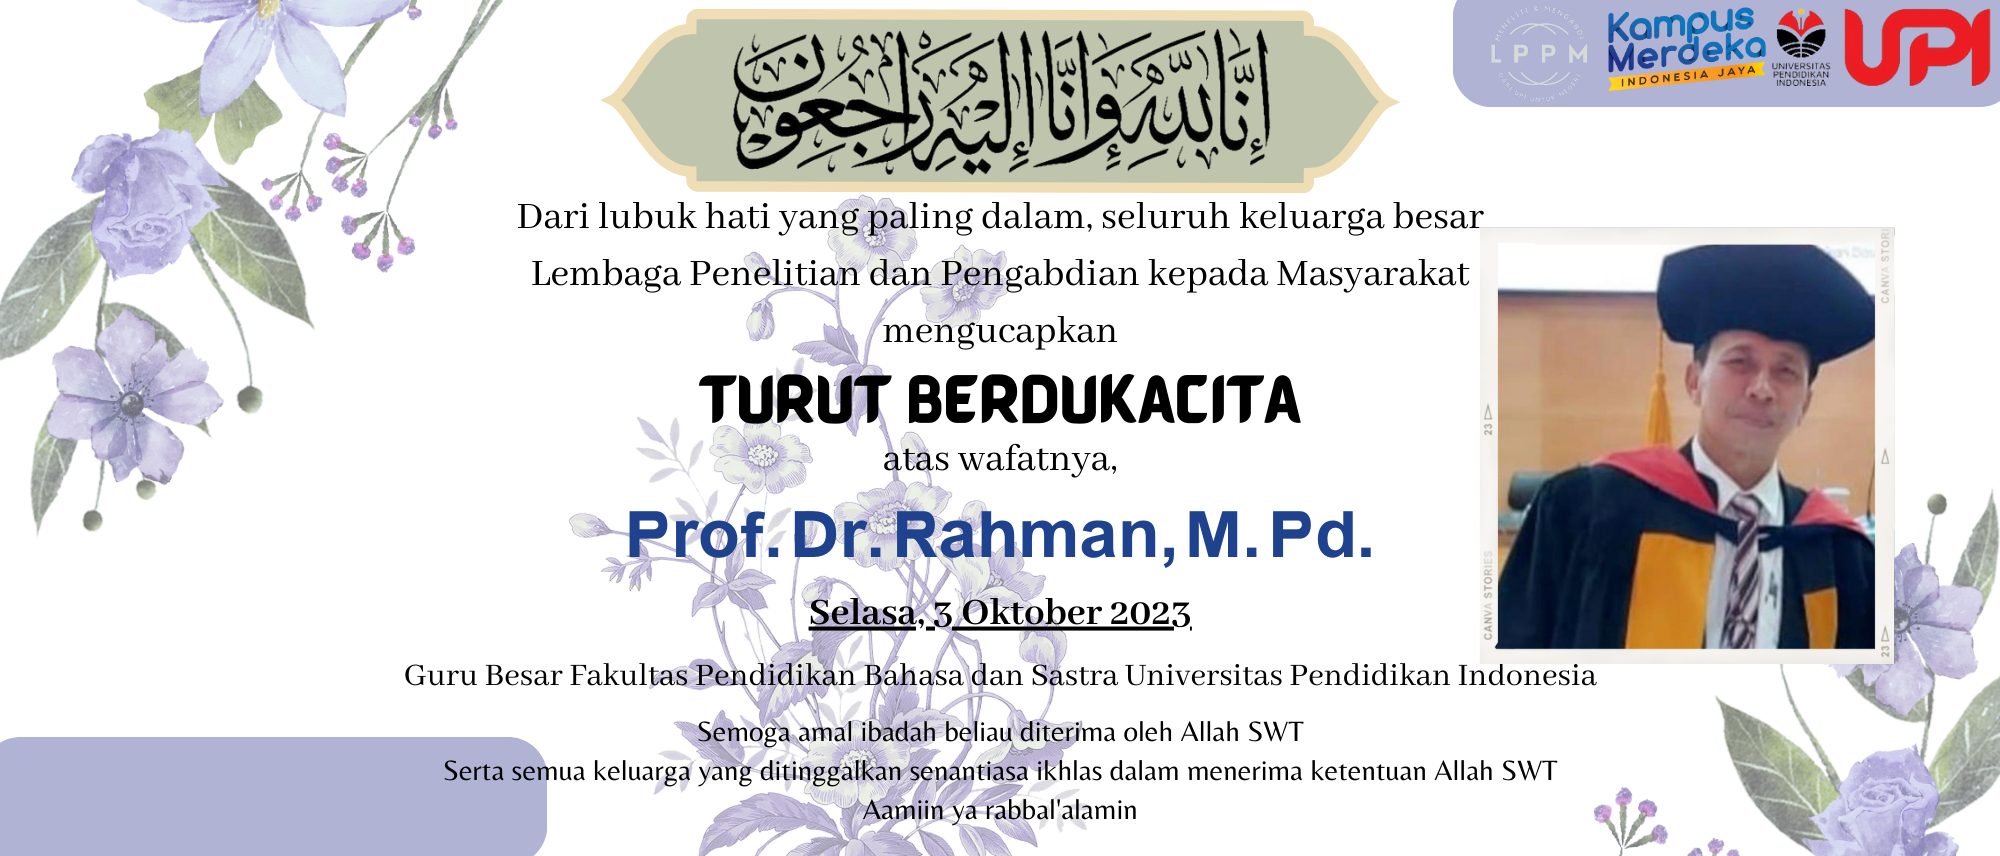 Berita Duka Prof. Dr. Rahman, M. Pd.